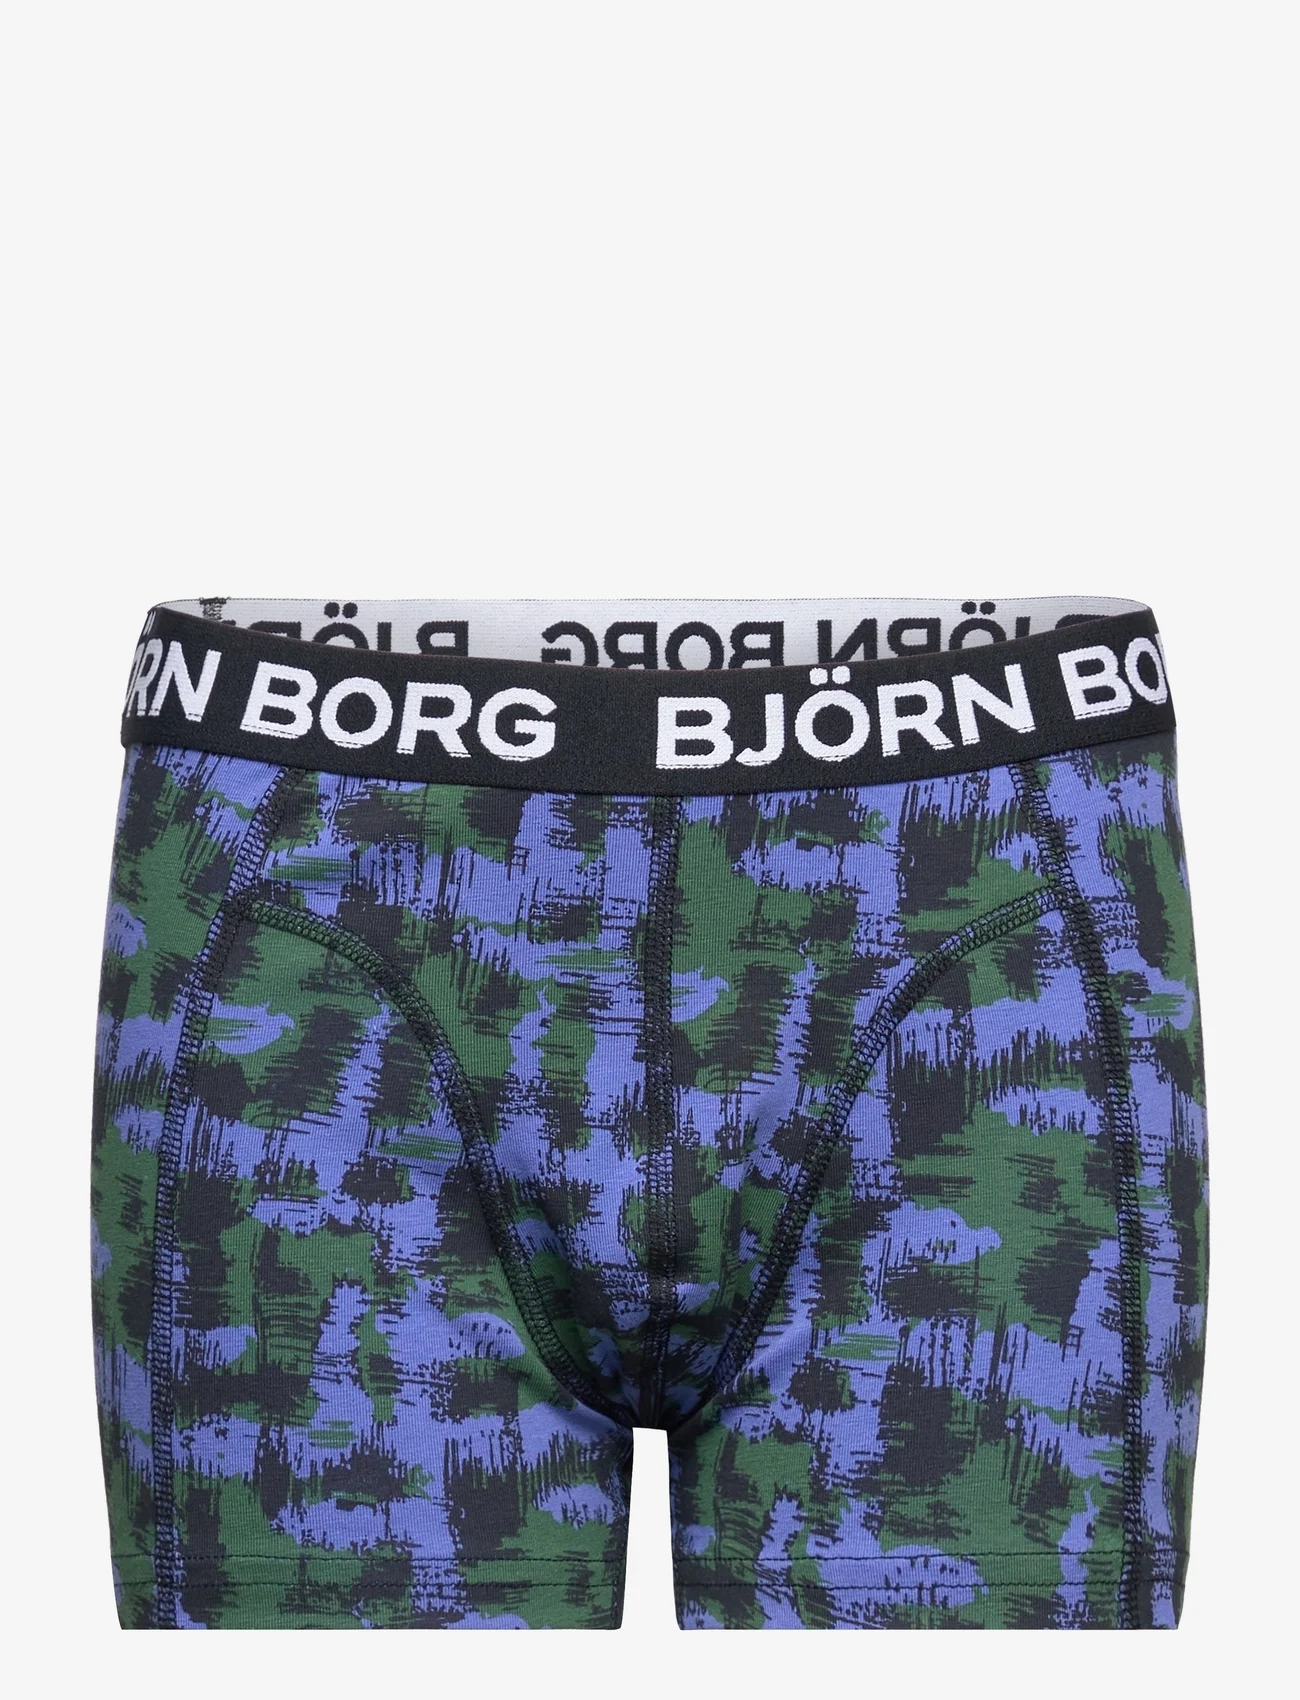 Björn Borg - CORE BOXER 2p - underbukser - multipack 1 - 1